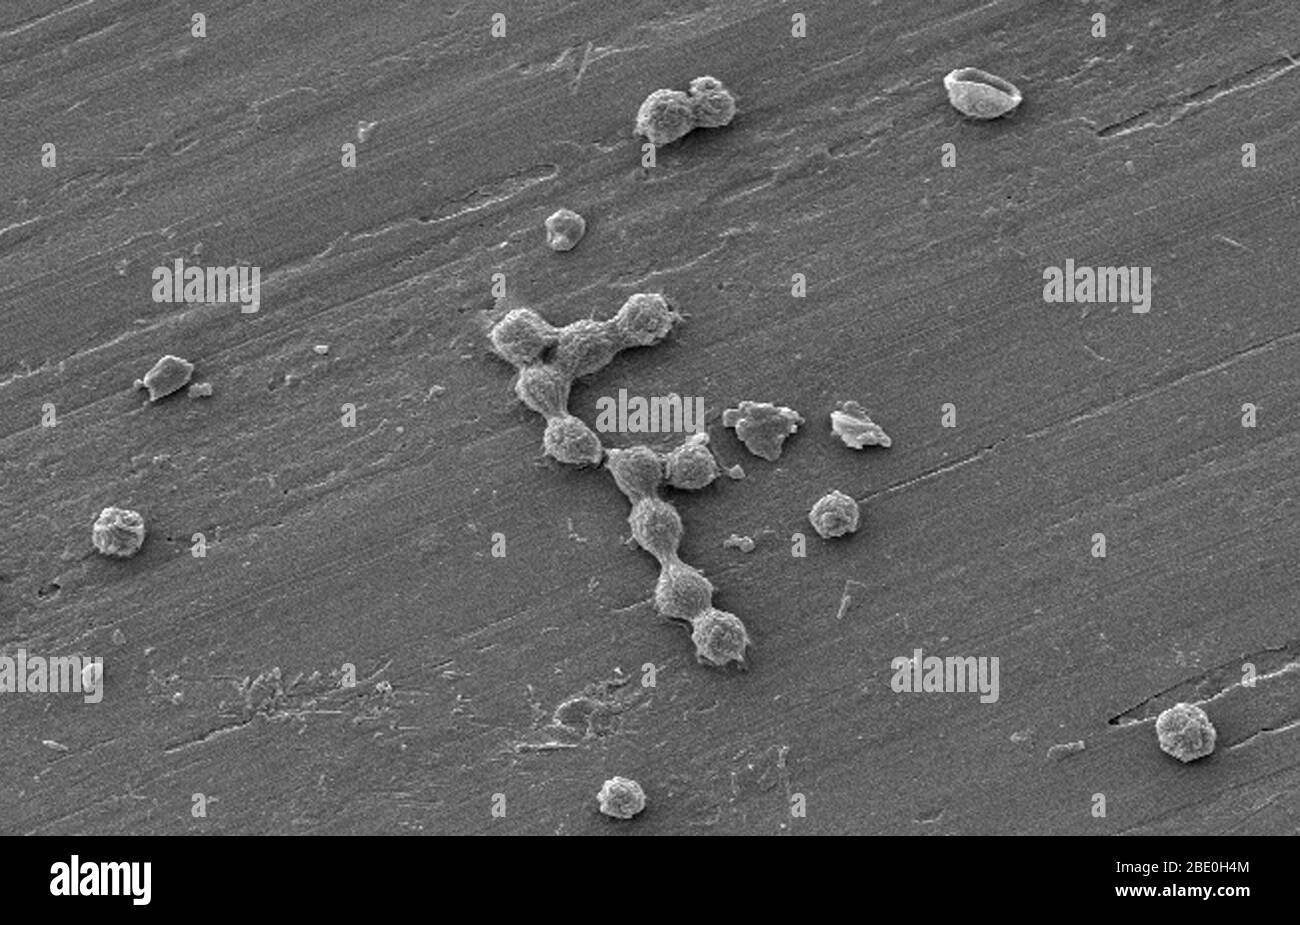 Les amibes libres (FLA) du groupe Amoebozoa sont des causes importantes de maladies chez les humains et les animaux. Couleur améliorée SEM d'un biofilm d'eau potable (potable) cultivé en laboratoire, avec la présence de kystes de Vermamoeba vermiformis (Hartmanella). Les bactéries aquatiques ont été cultivées comme biofilm sur l'acier pendant une semaine. V. vermiformis a ensuite été ajouté, et phagocytisé la bactérie qui s'est multipliée dans les vésicules qui sont devenues des kystes dans lesquels la bactérie vivra jusqu'à ce qu'elle se rupture. Vermamoeba vermiformis est une amibe libre-vivant (FLA), est de nature répandue et a été isolée du sol, de l'eau douce, de l'air, et un Banque D'Images